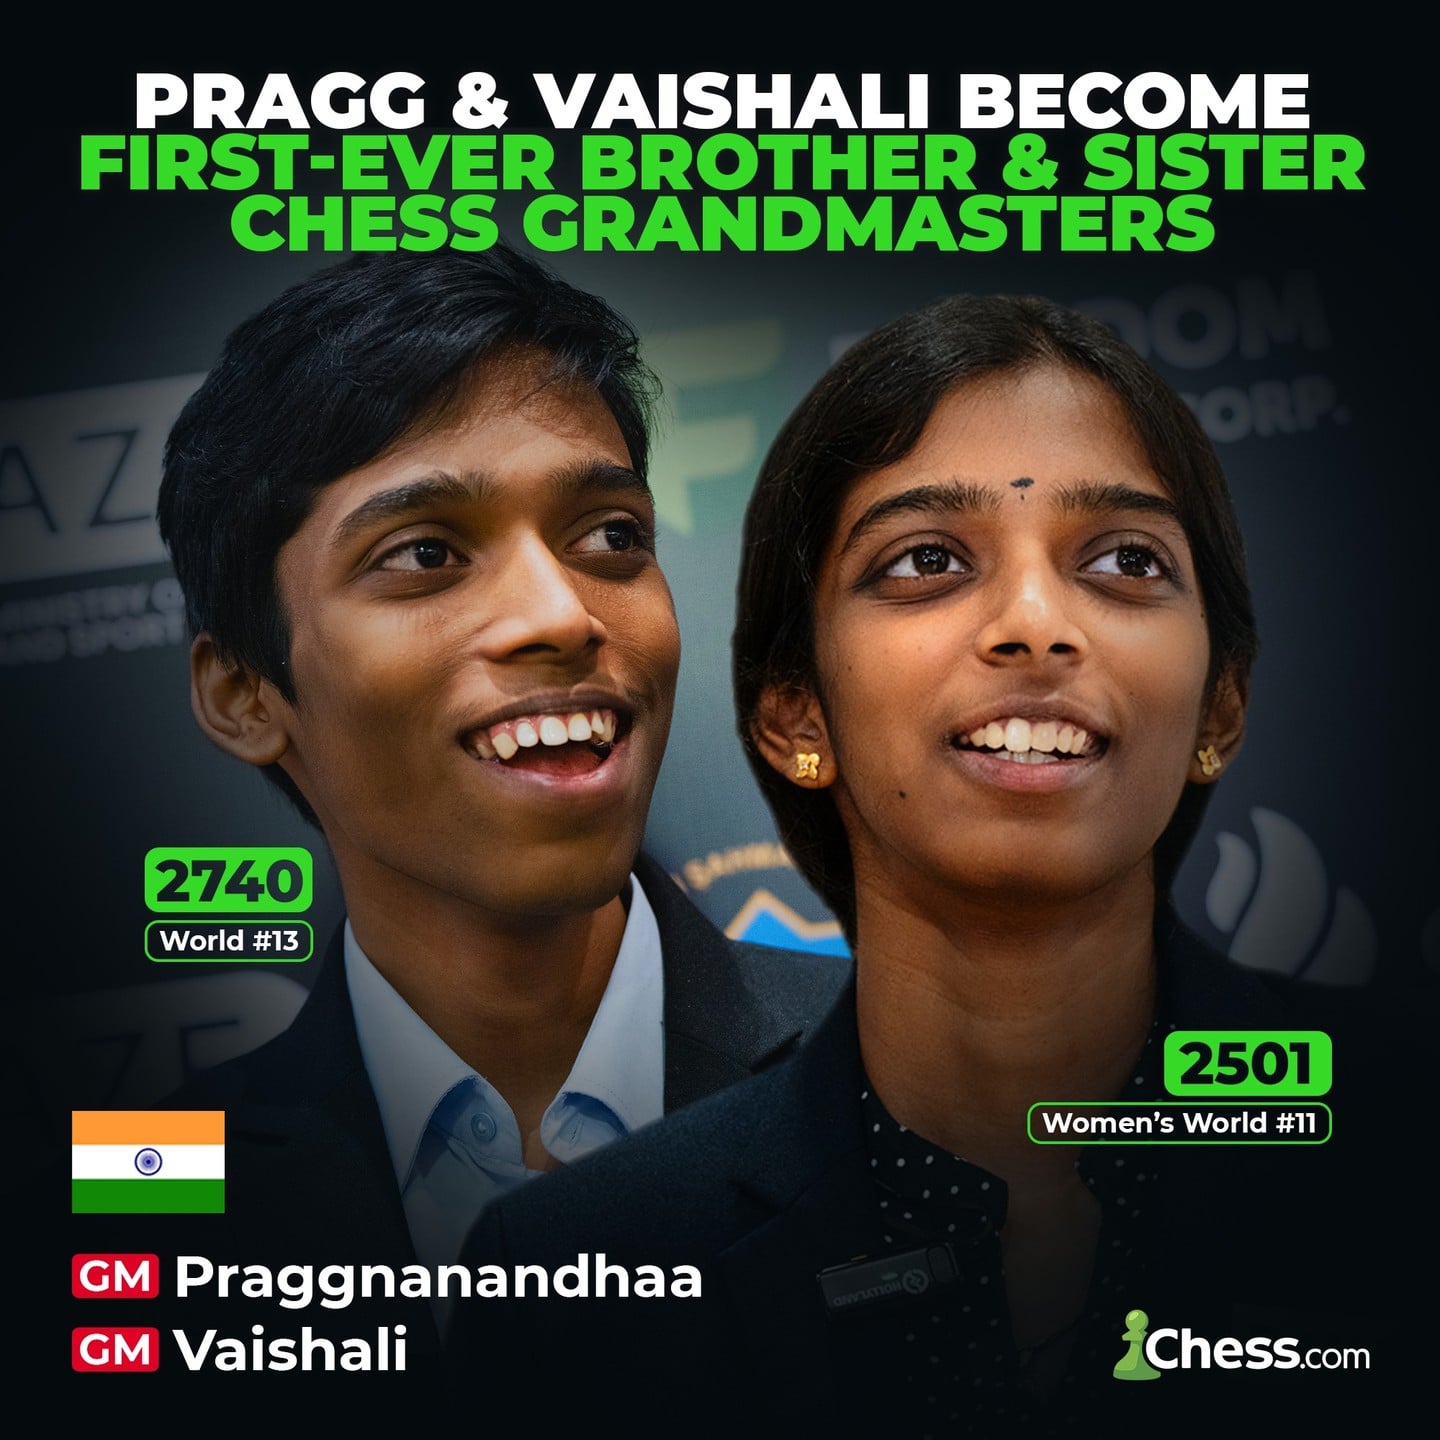 the-worlds-first-brother-and-sister-chess-grandmasters-v0-z1oeg1q9av3c1.jpg